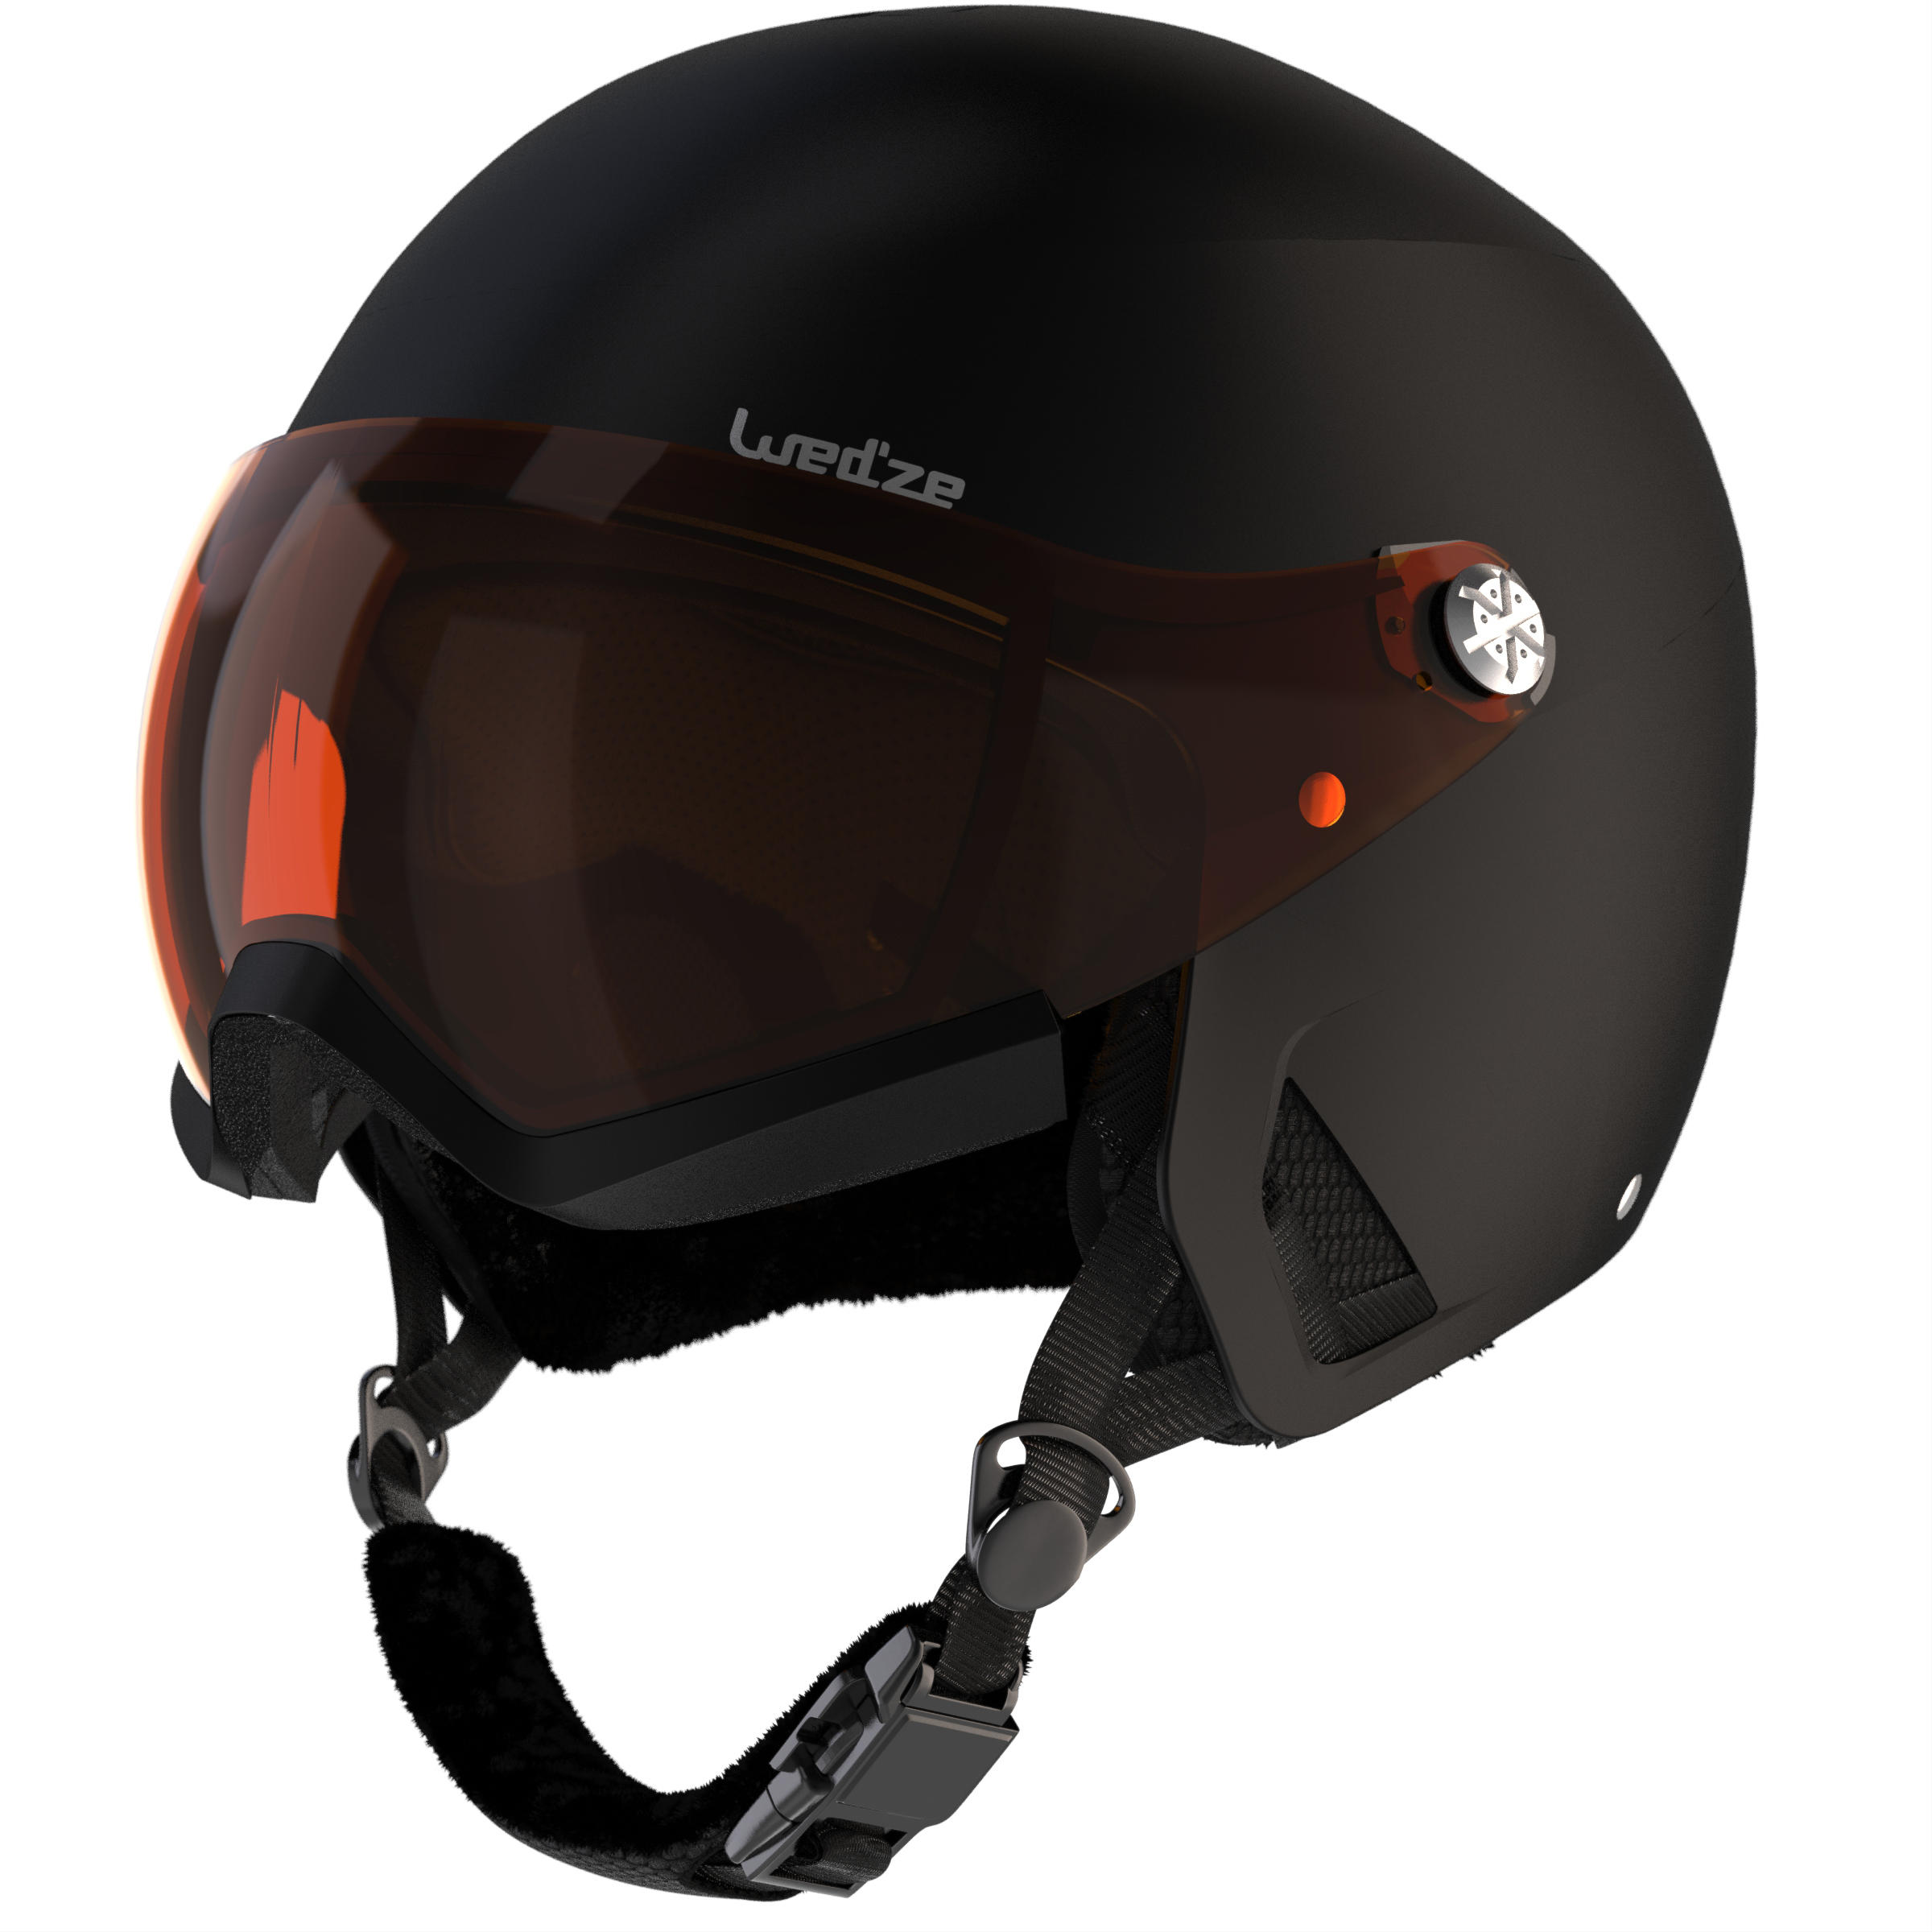 Adult Skiing Helmet Visor 6/6